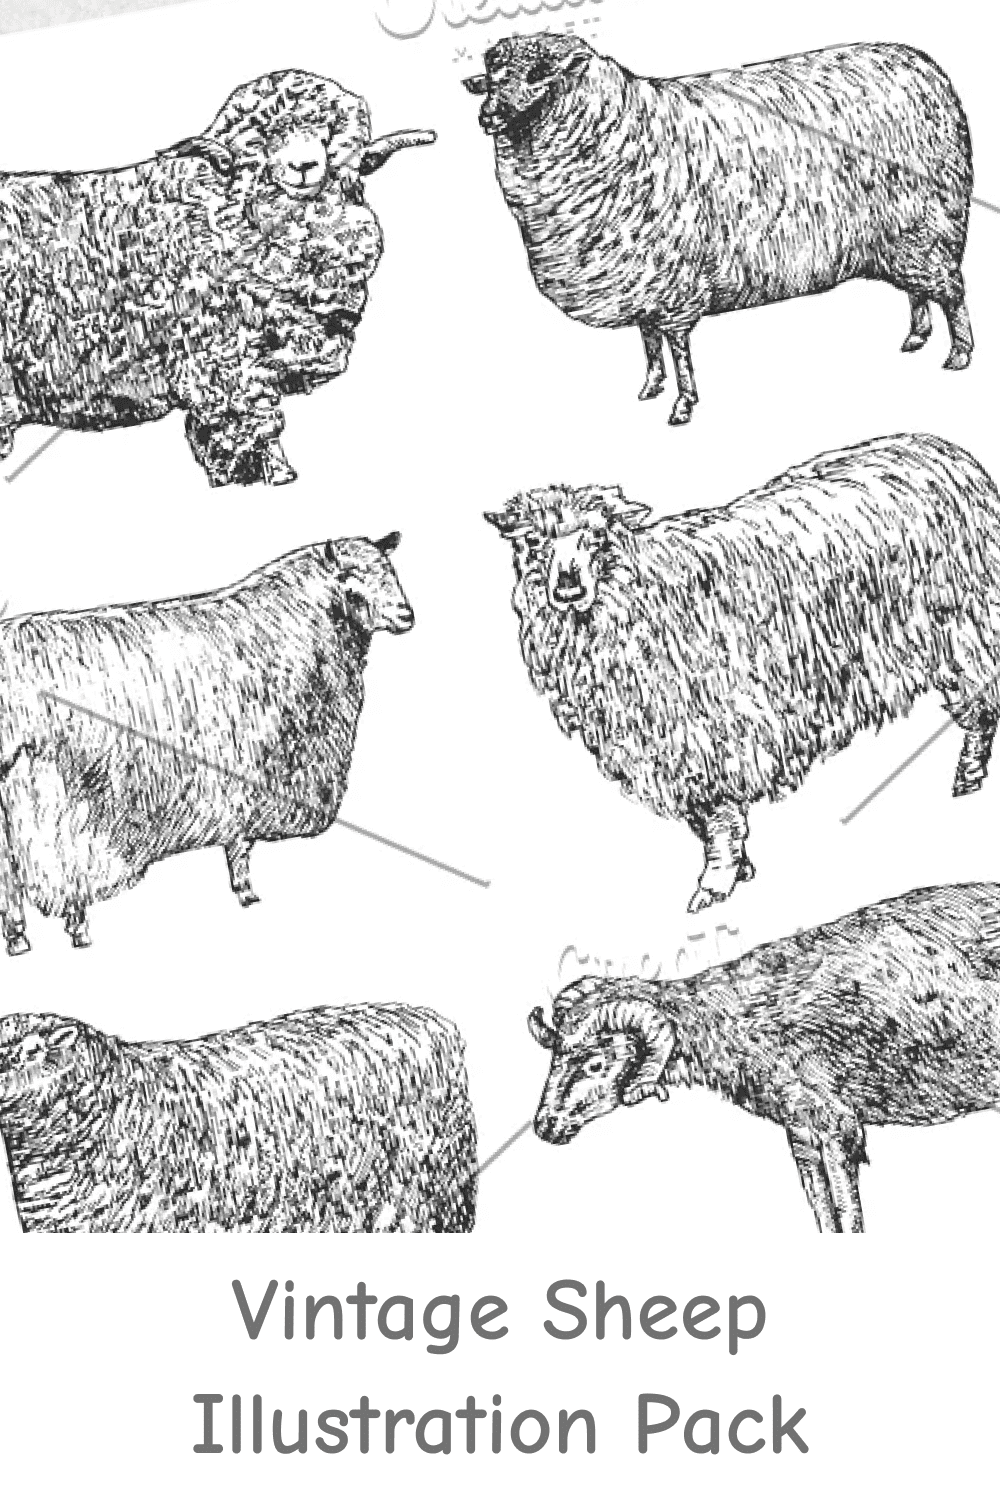 Vintage Sheep Illustration Pack.